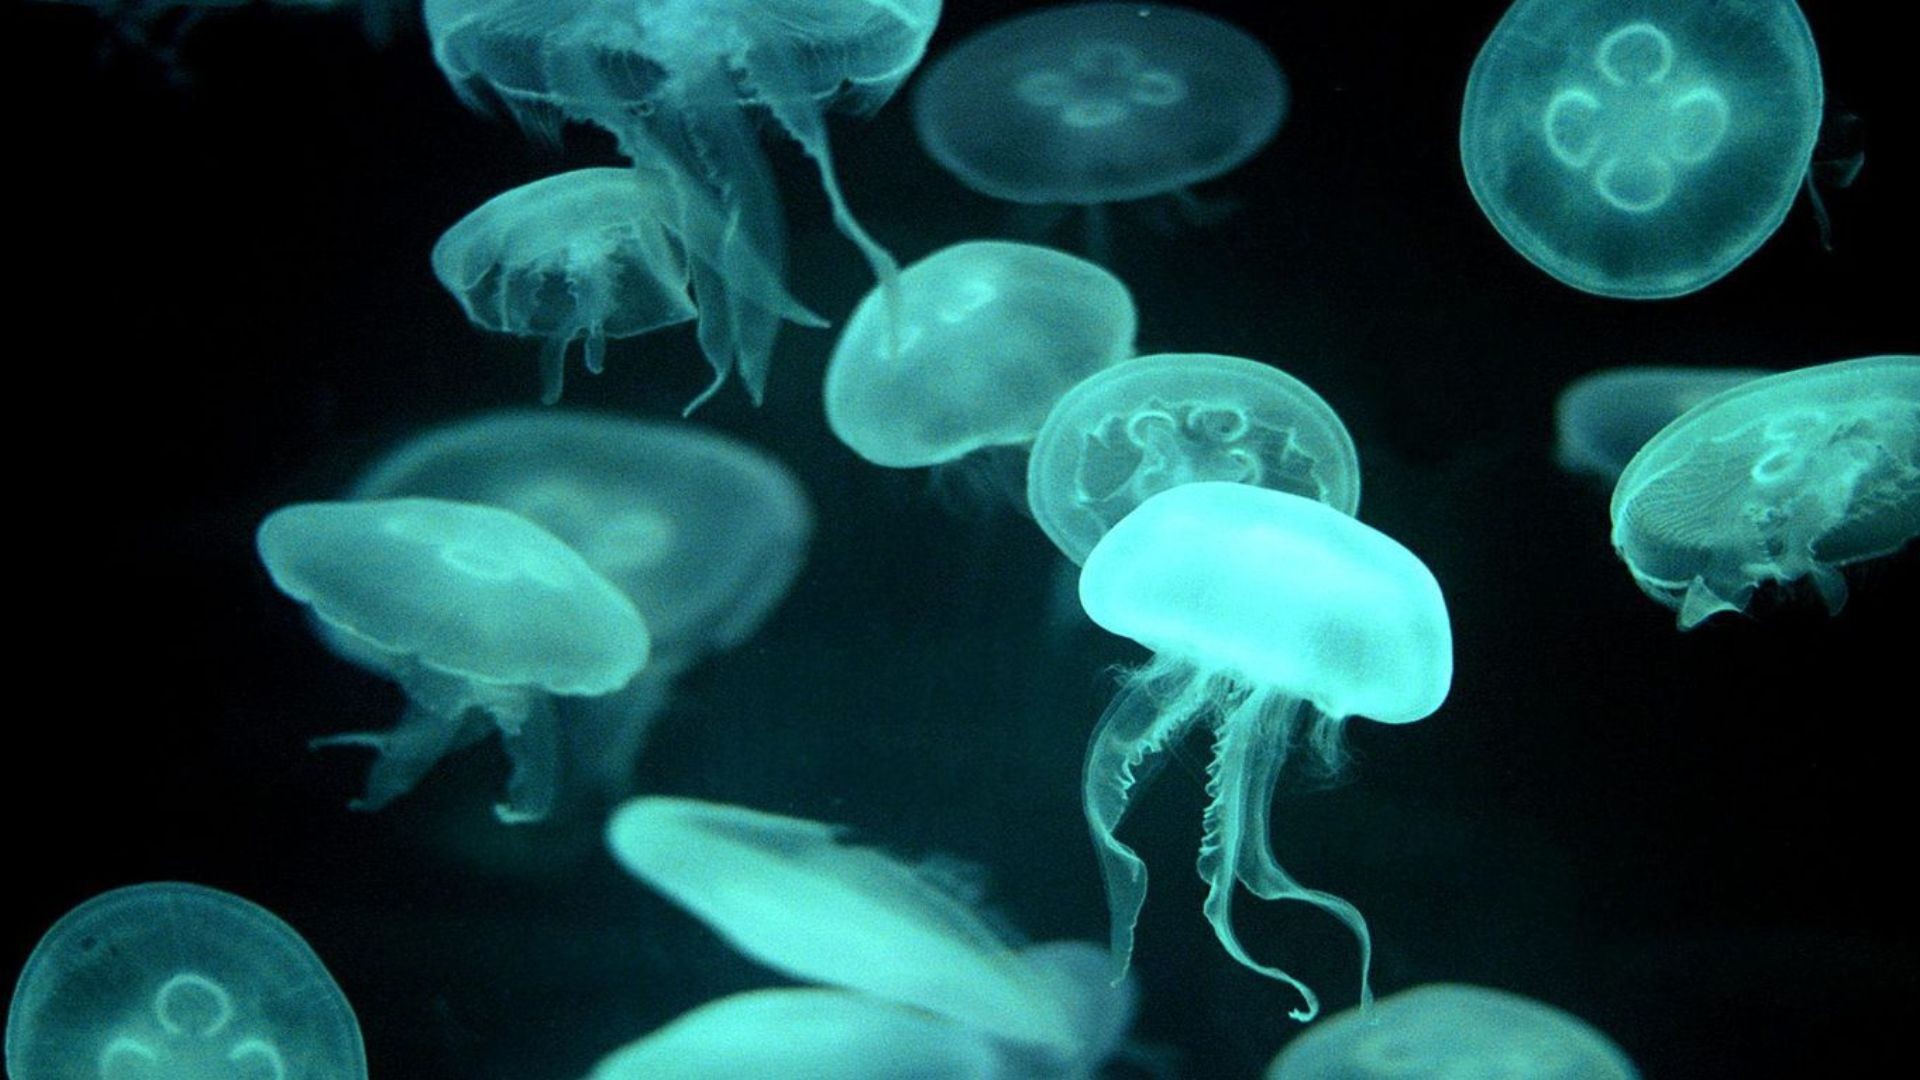 General 1920x1080 animals jellyfish sea life fluorescent cyan dark underwater